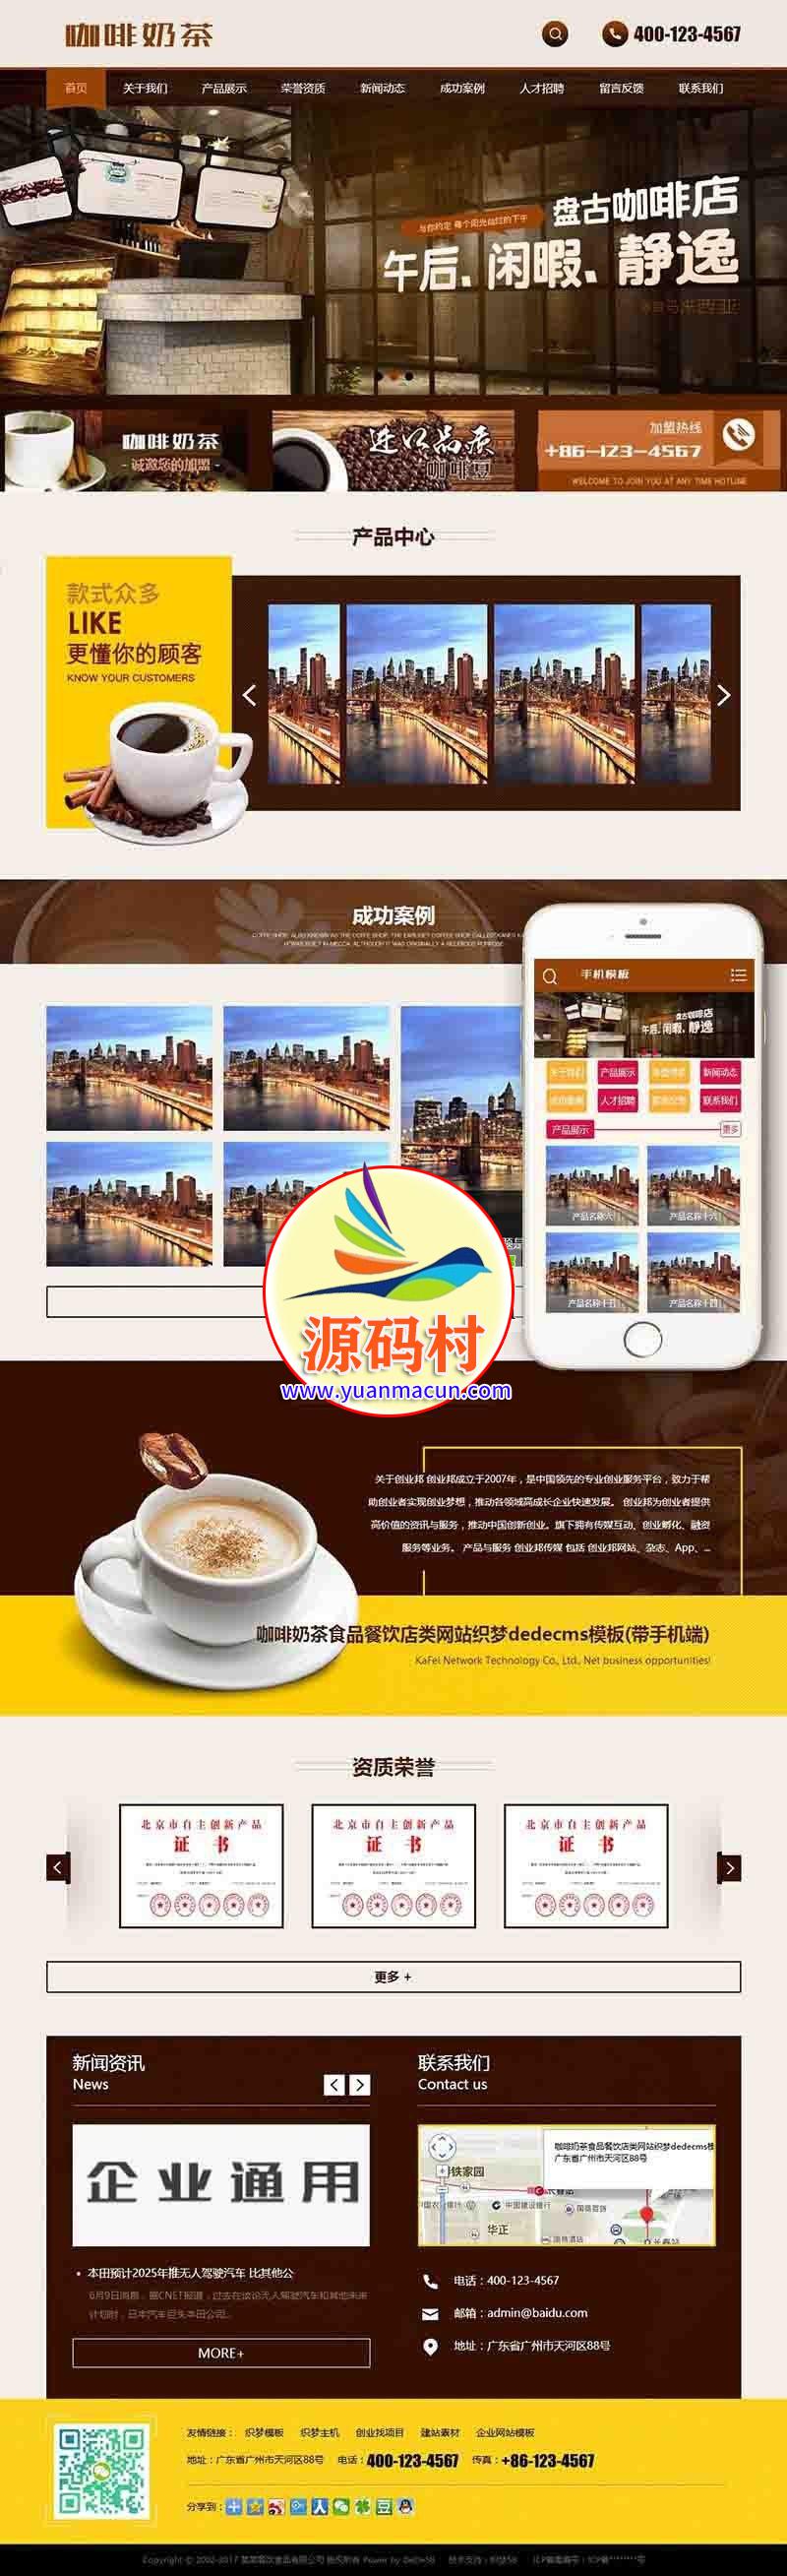  dedecms织梦咖啡奶茶食品餐饮店类网站源码(带手机端)业 奶茶餐饮整站源码下载